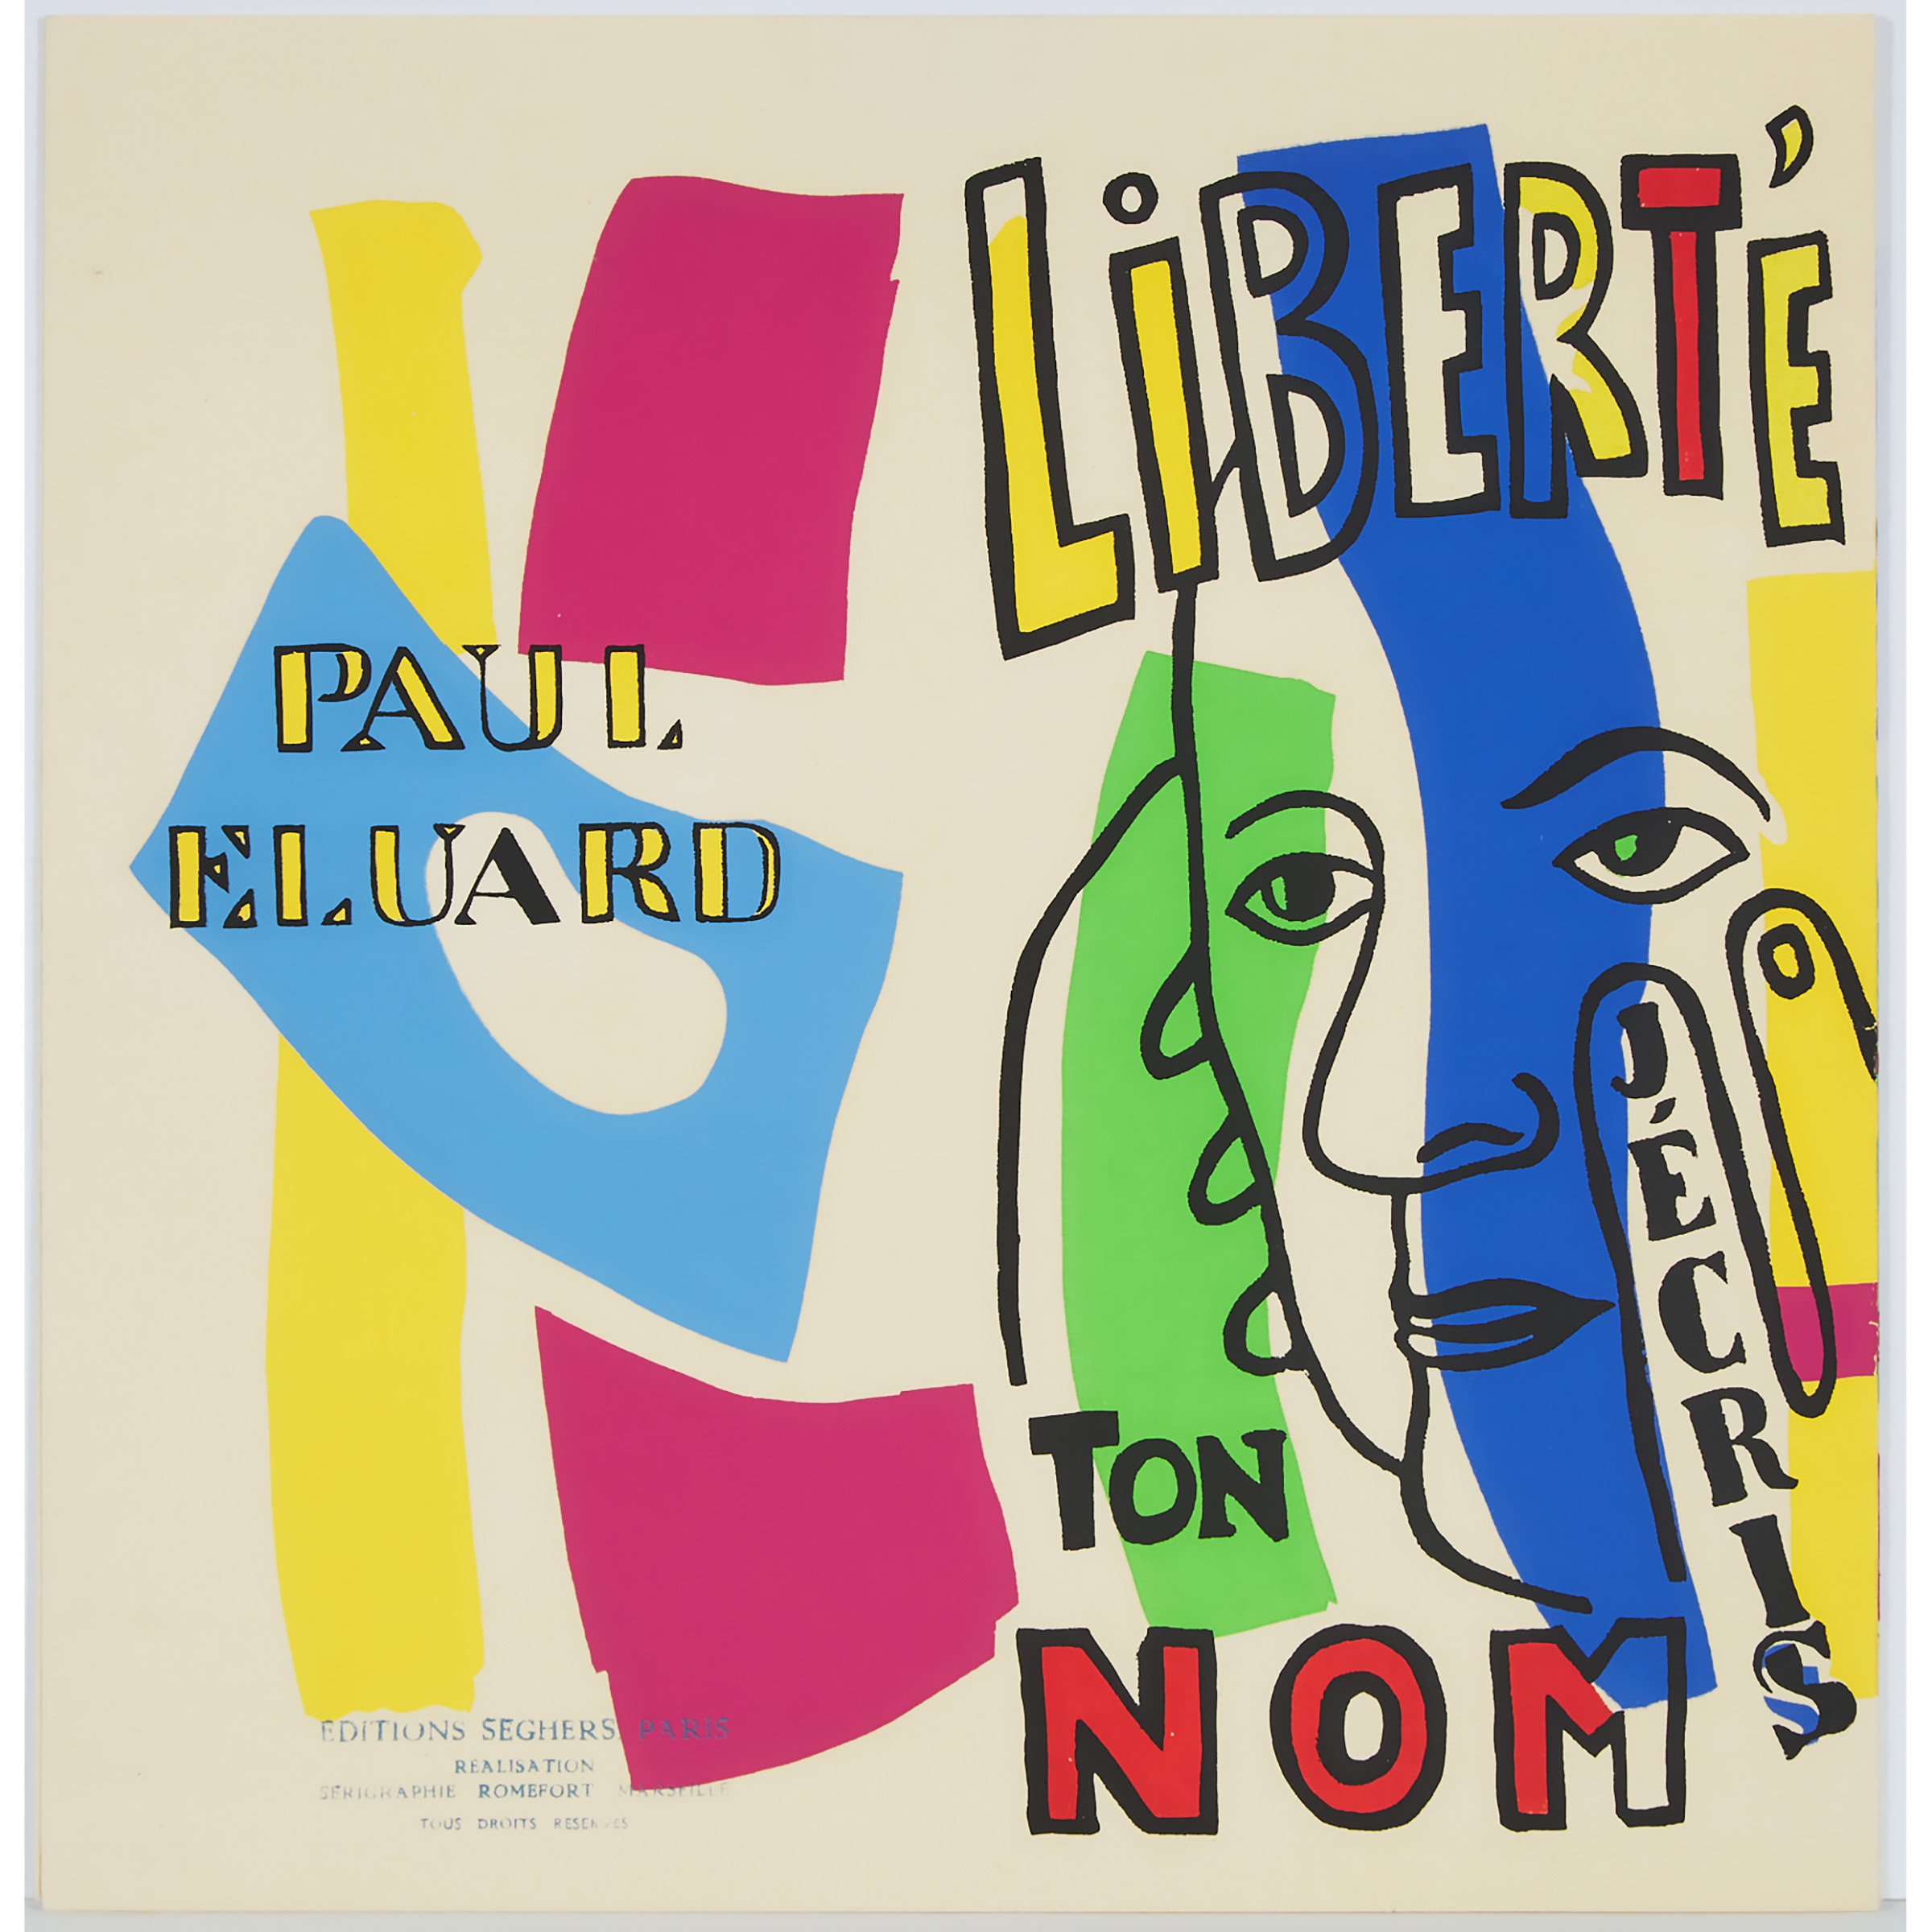 Fernand Léger (1881-1955) and Paul Eluard (1895-1952)